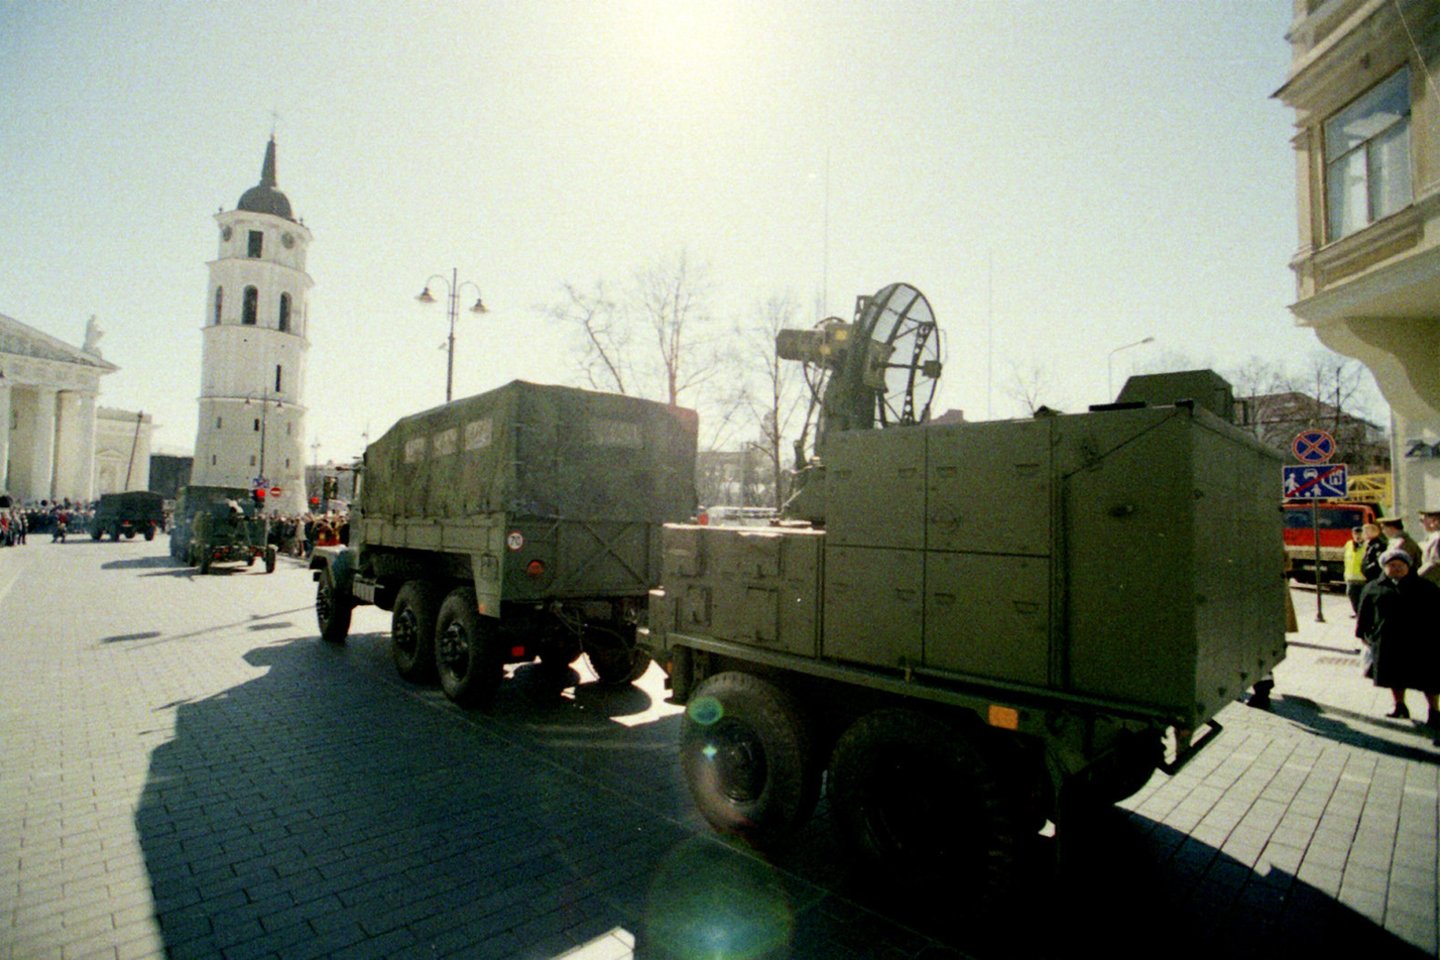 Istorinės nuotraukos iš didžiausio Nepriklausomos Lietuvos karinio parado 2004-ųjų pavasarį <br>A. Pliadis/KAM nuotr.